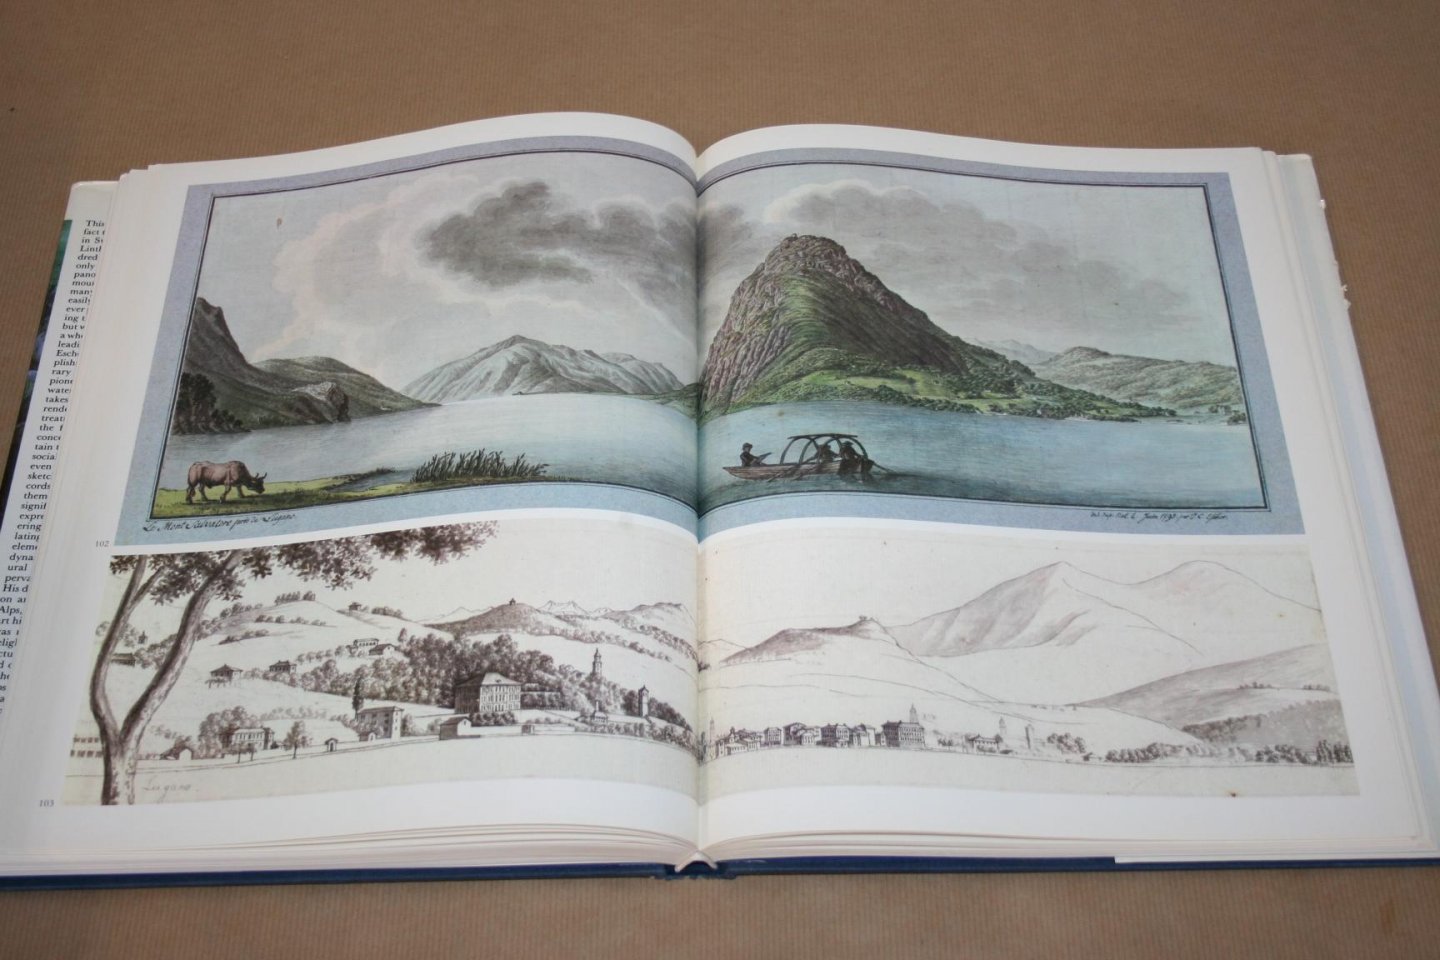 Hans Conrad Escher von der Linth - Views and Panoramas of Switzerland 1780-1822